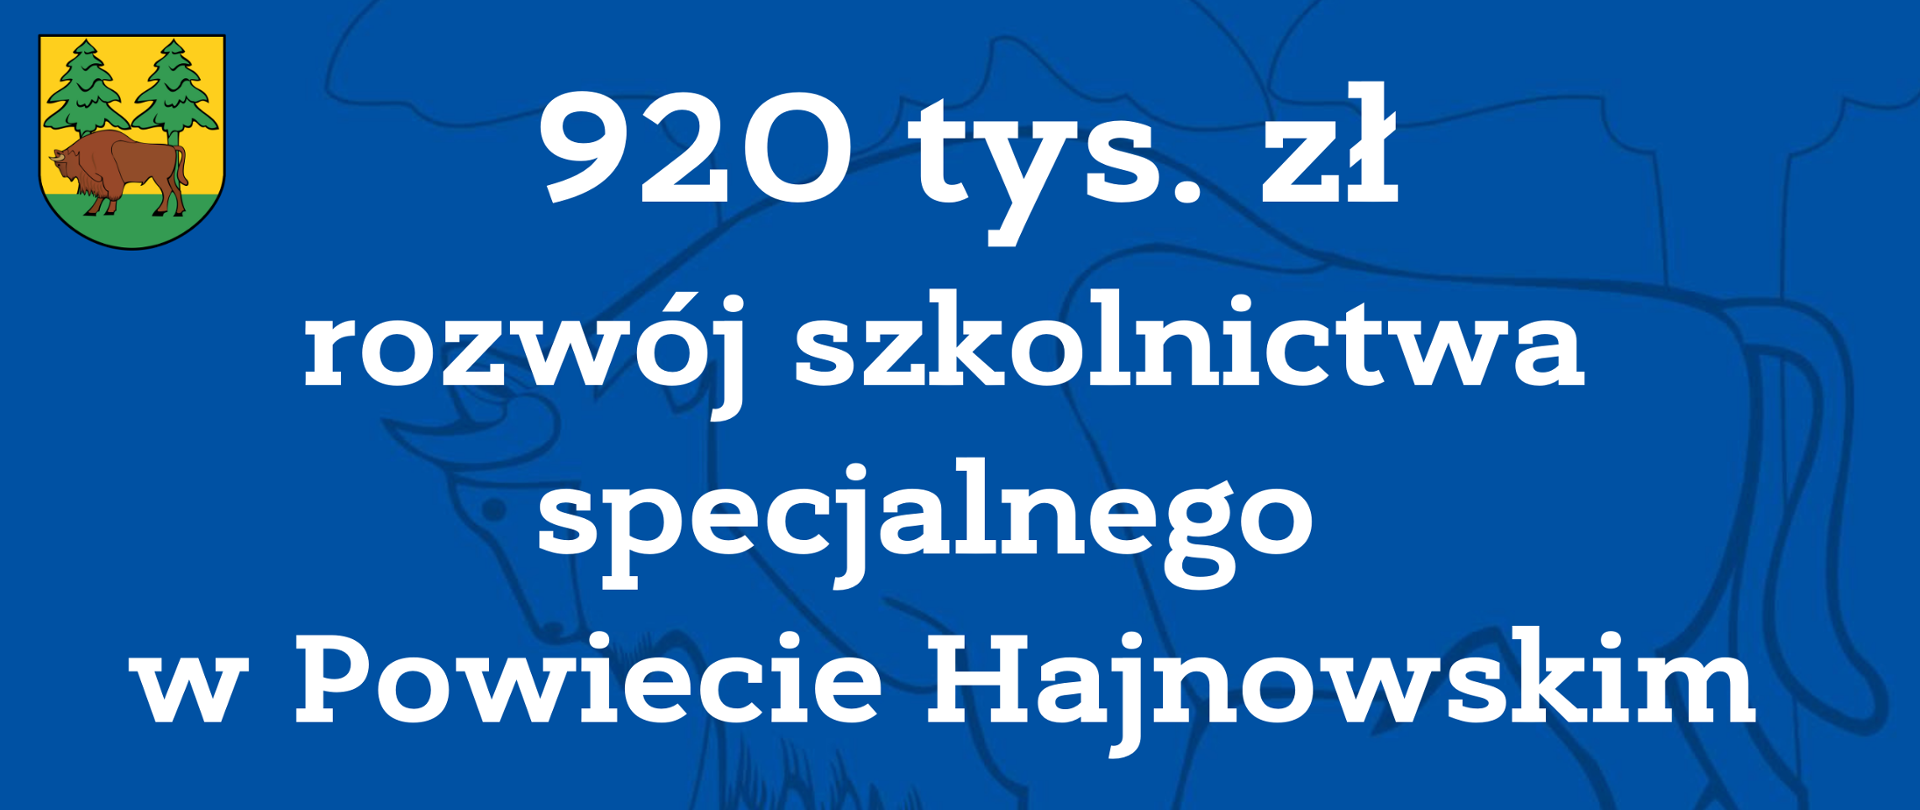 920 tys. zł rozwój szkolnictwa specjalnego w Powiecie Hajnowskim